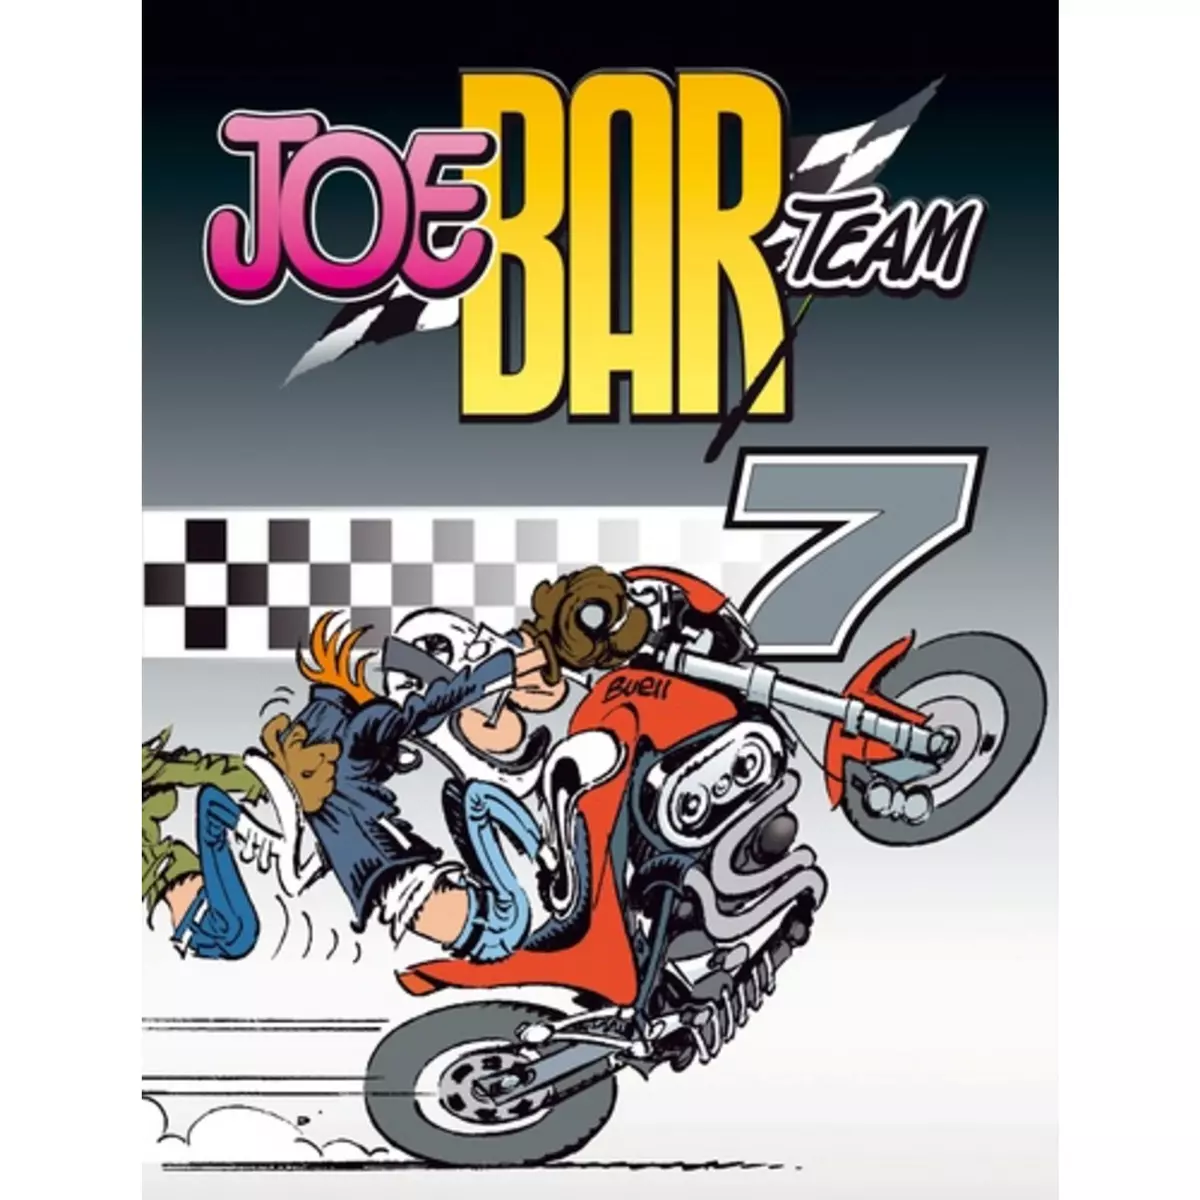  JOE BAR TEAM TOME 7, Bar2